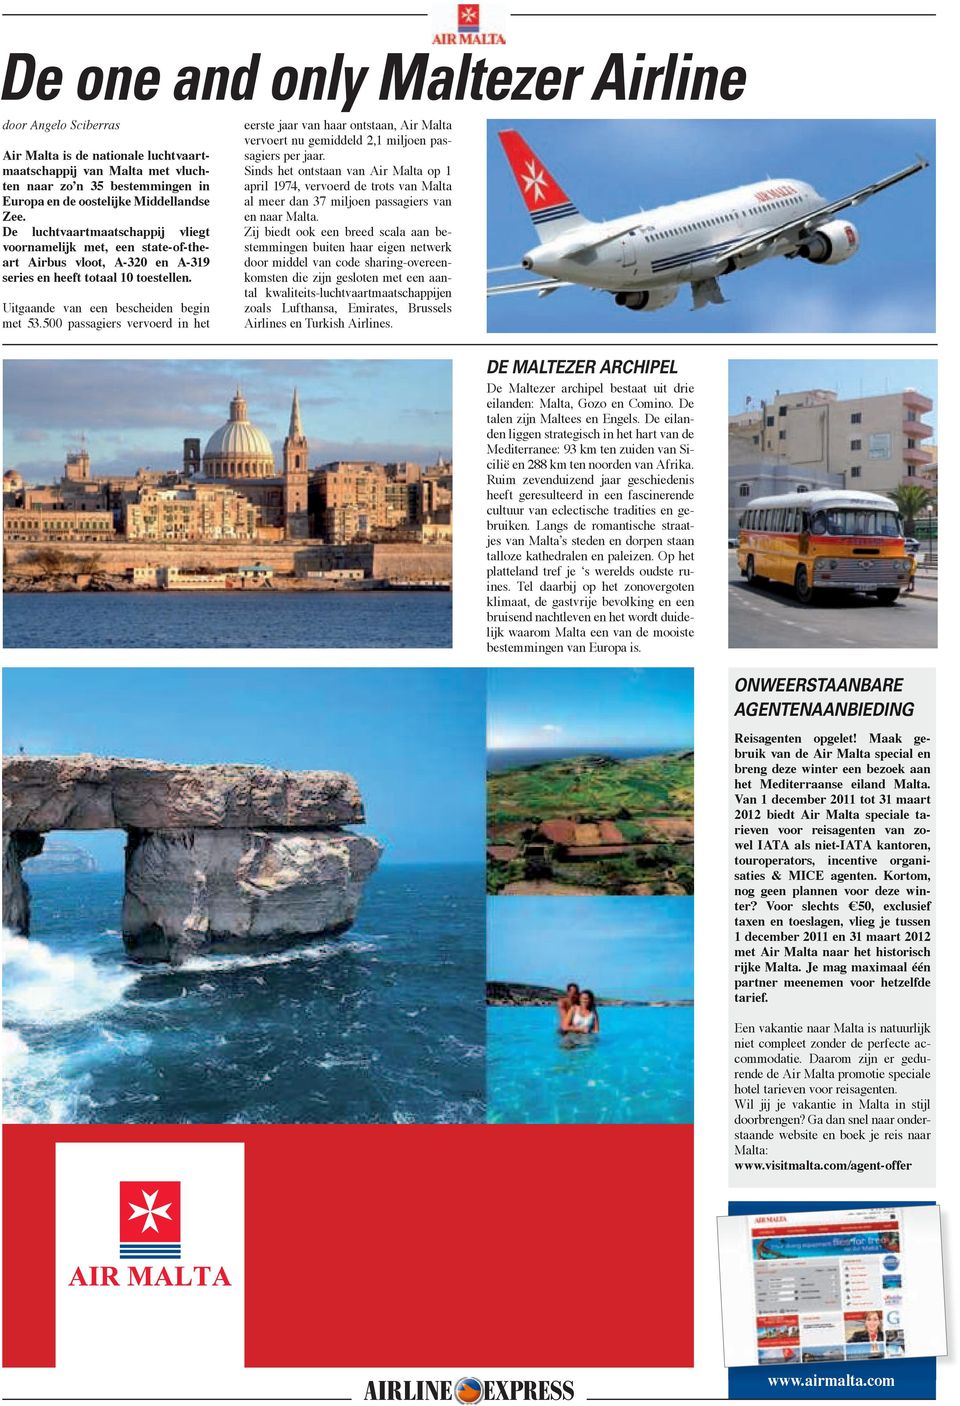 500 passagiers vervoerd in het eerste jaar van haar ontstaan, Air Malta vervoert nu gemiddeld 2,1 miljoen passagiers per jaar.